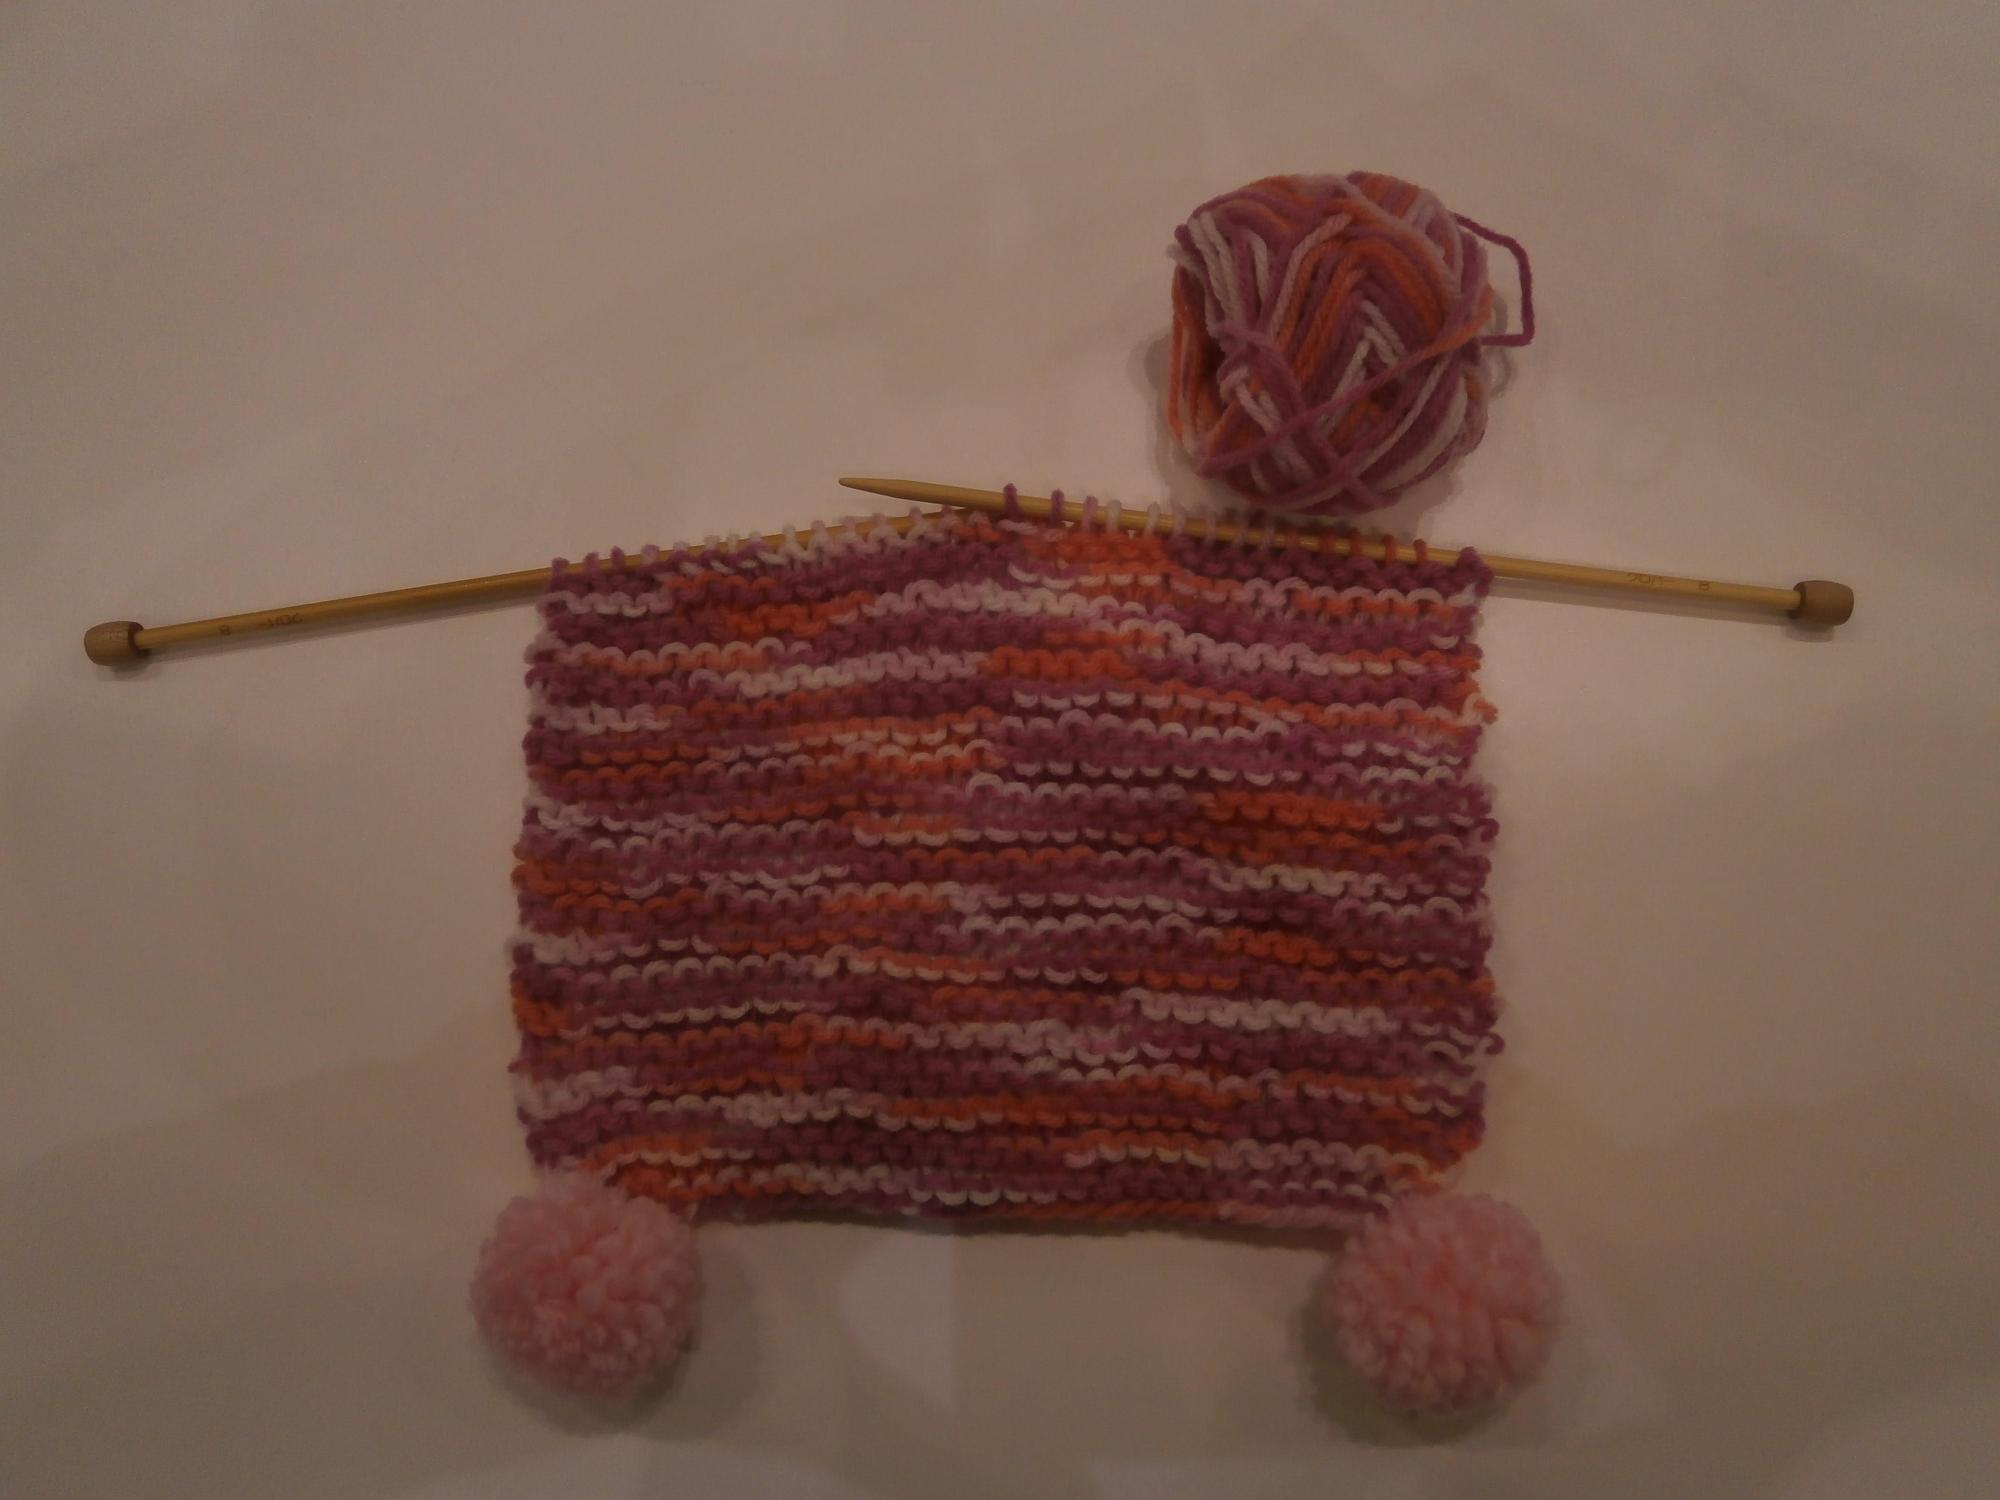 端に黄色のポンポンが二つついた赤と黄色の混じった毛糸で編みかけのマフラーの写真